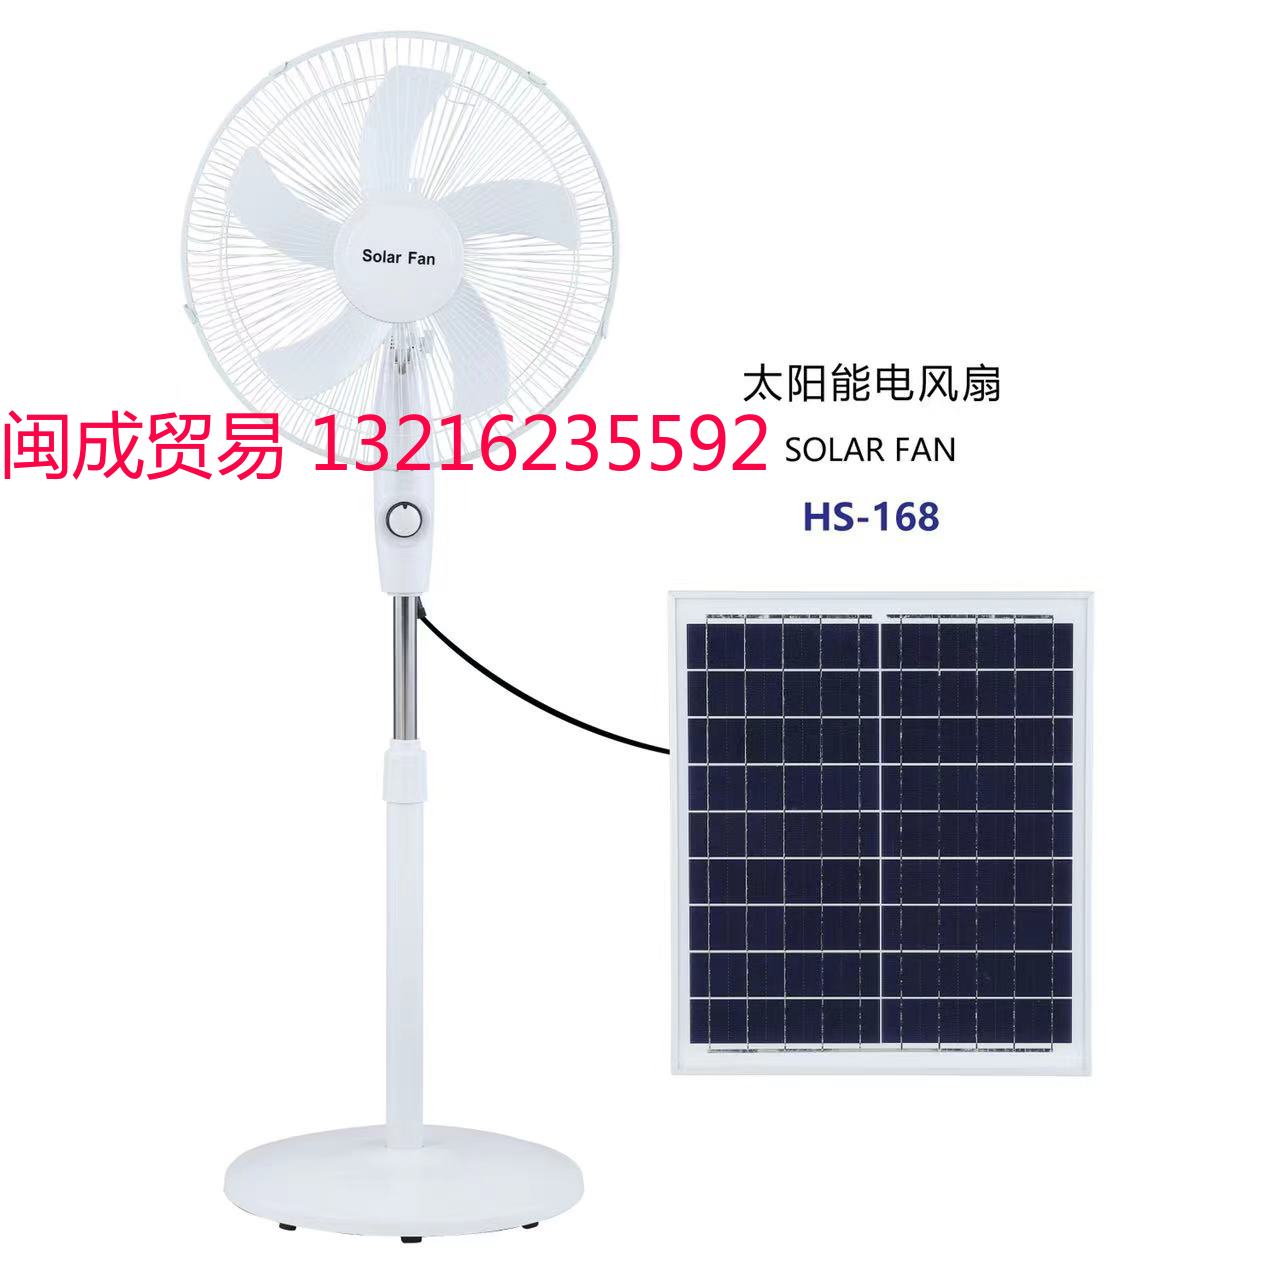 太阳能风扇 Solar fan HS-168